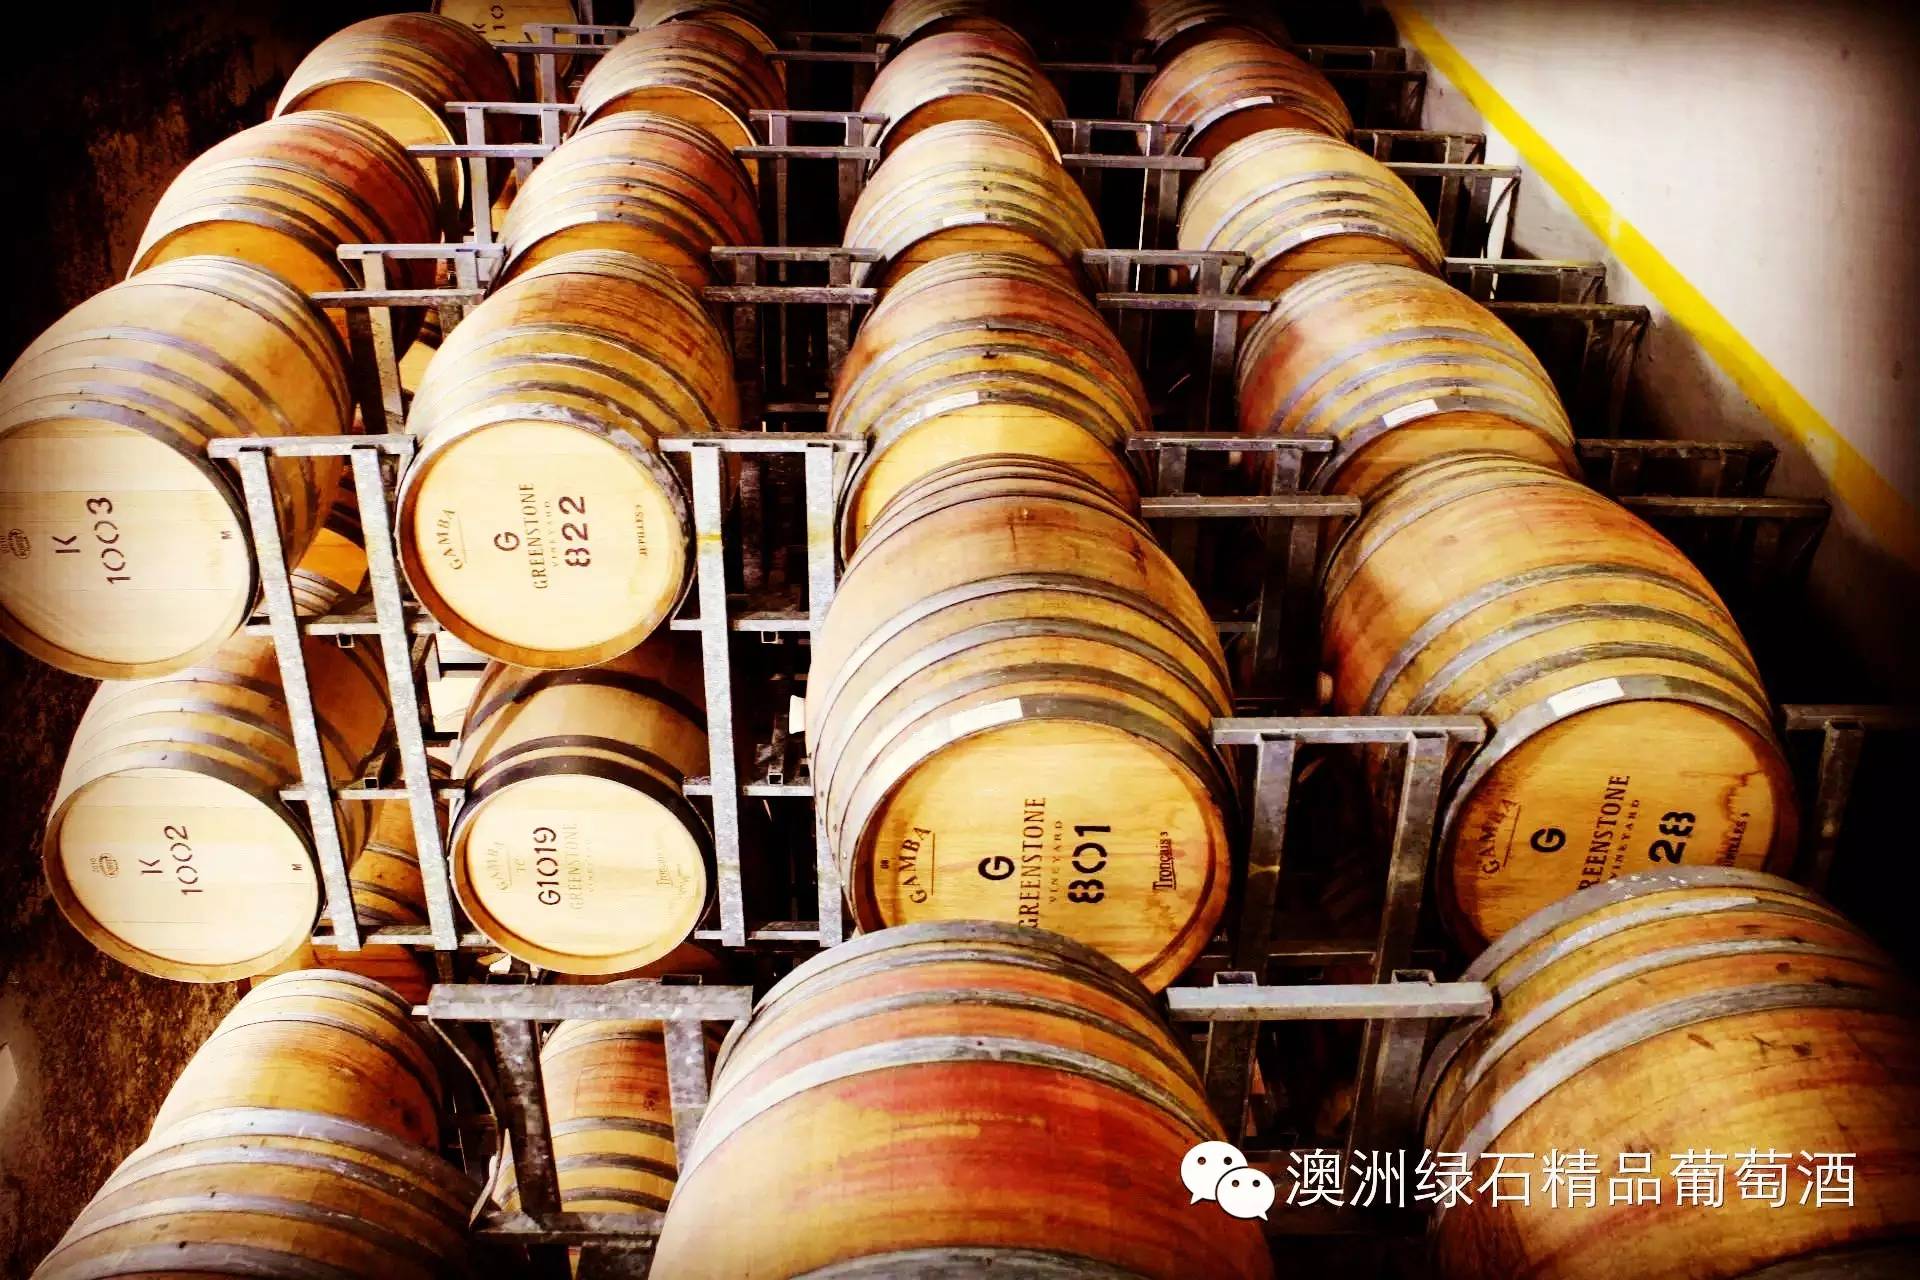 【美酒】走进维州具有产区特色的高级葡萄酒庄园